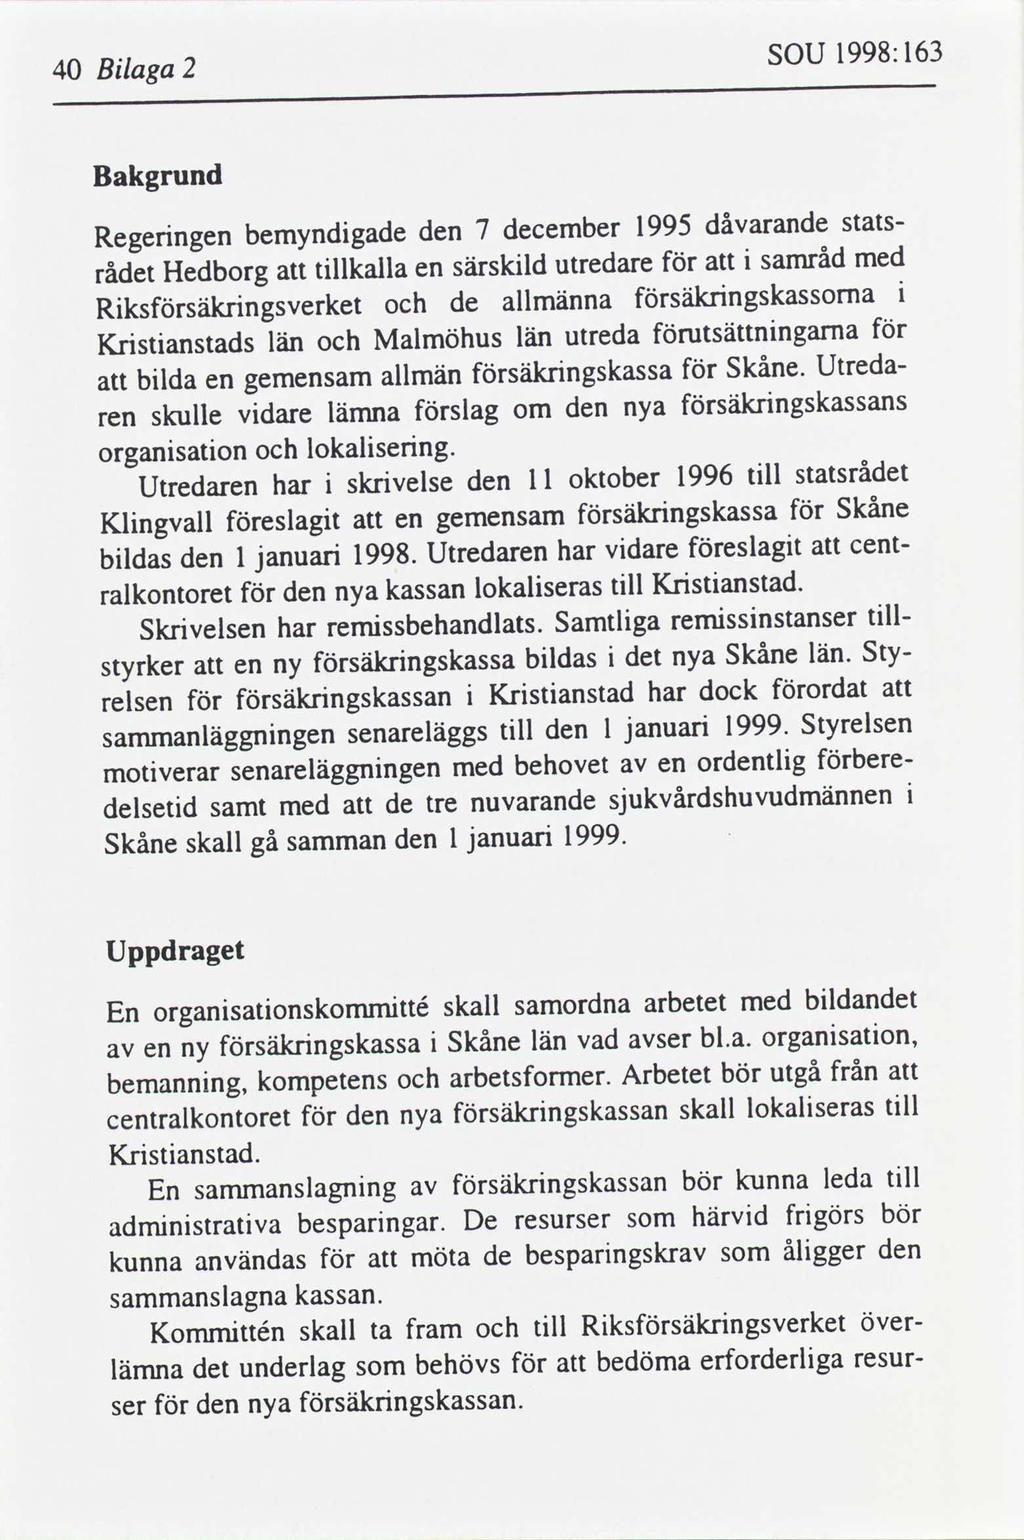 1998:163 SOU 2 Blaga 40 Bakgrund dåvarande 1995 statsdecember 7 den bemyndgade Regerngen med samråd utredare särskld tllkalla Hedborg rådet en säkrngskasa allmänna de Rkssäkrngsverket utsättnngarna